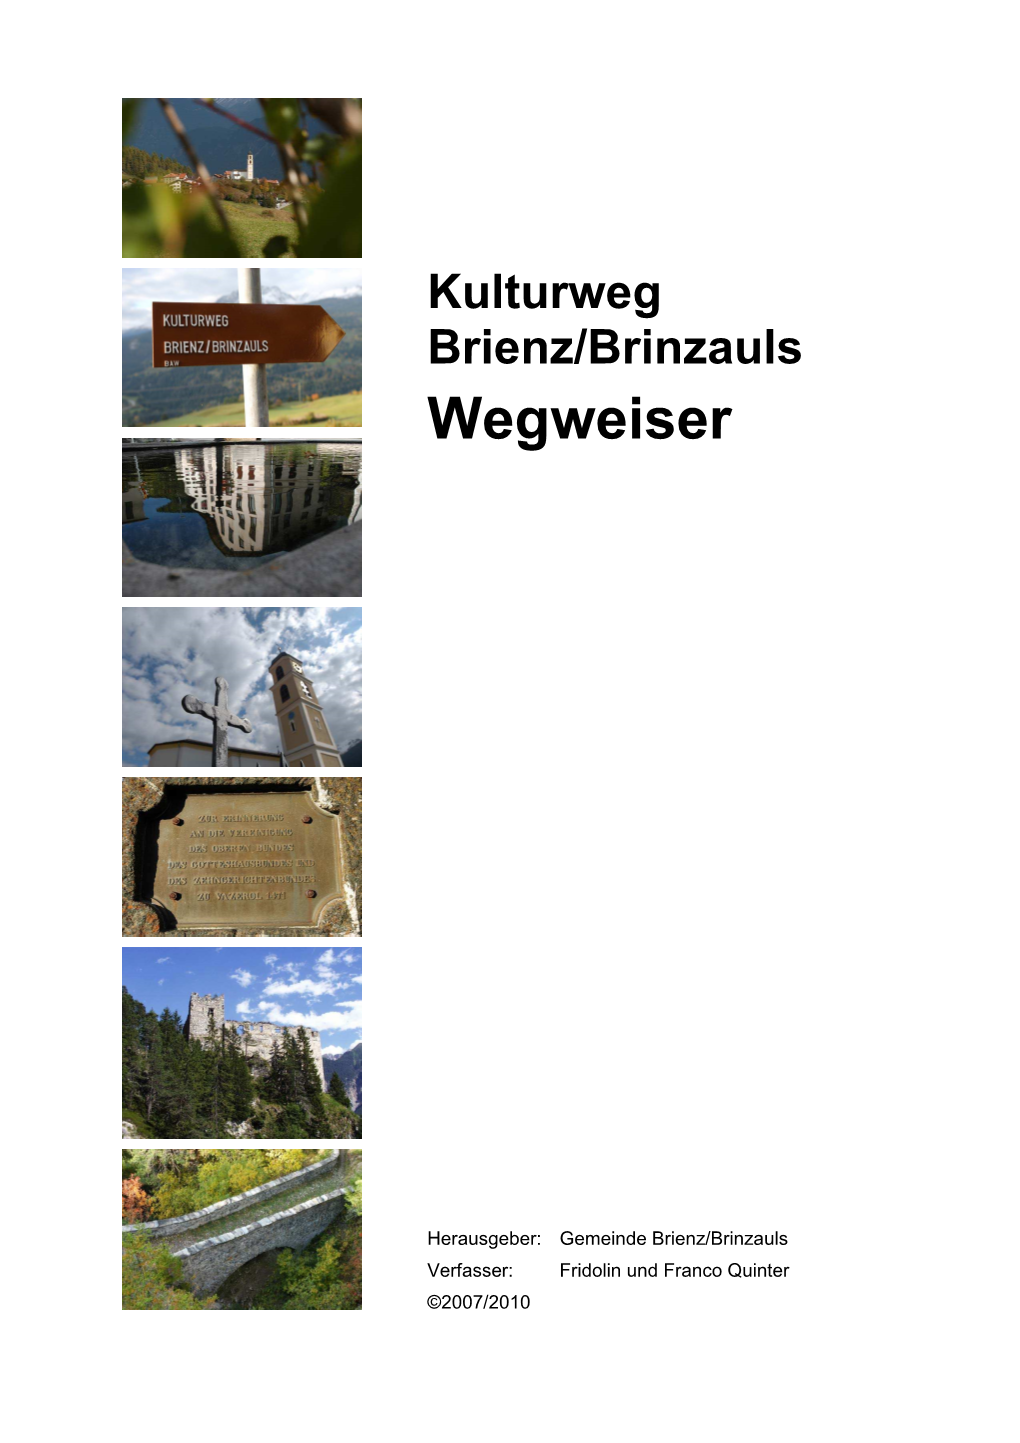 Kulturweg Brienz/Brinzauls